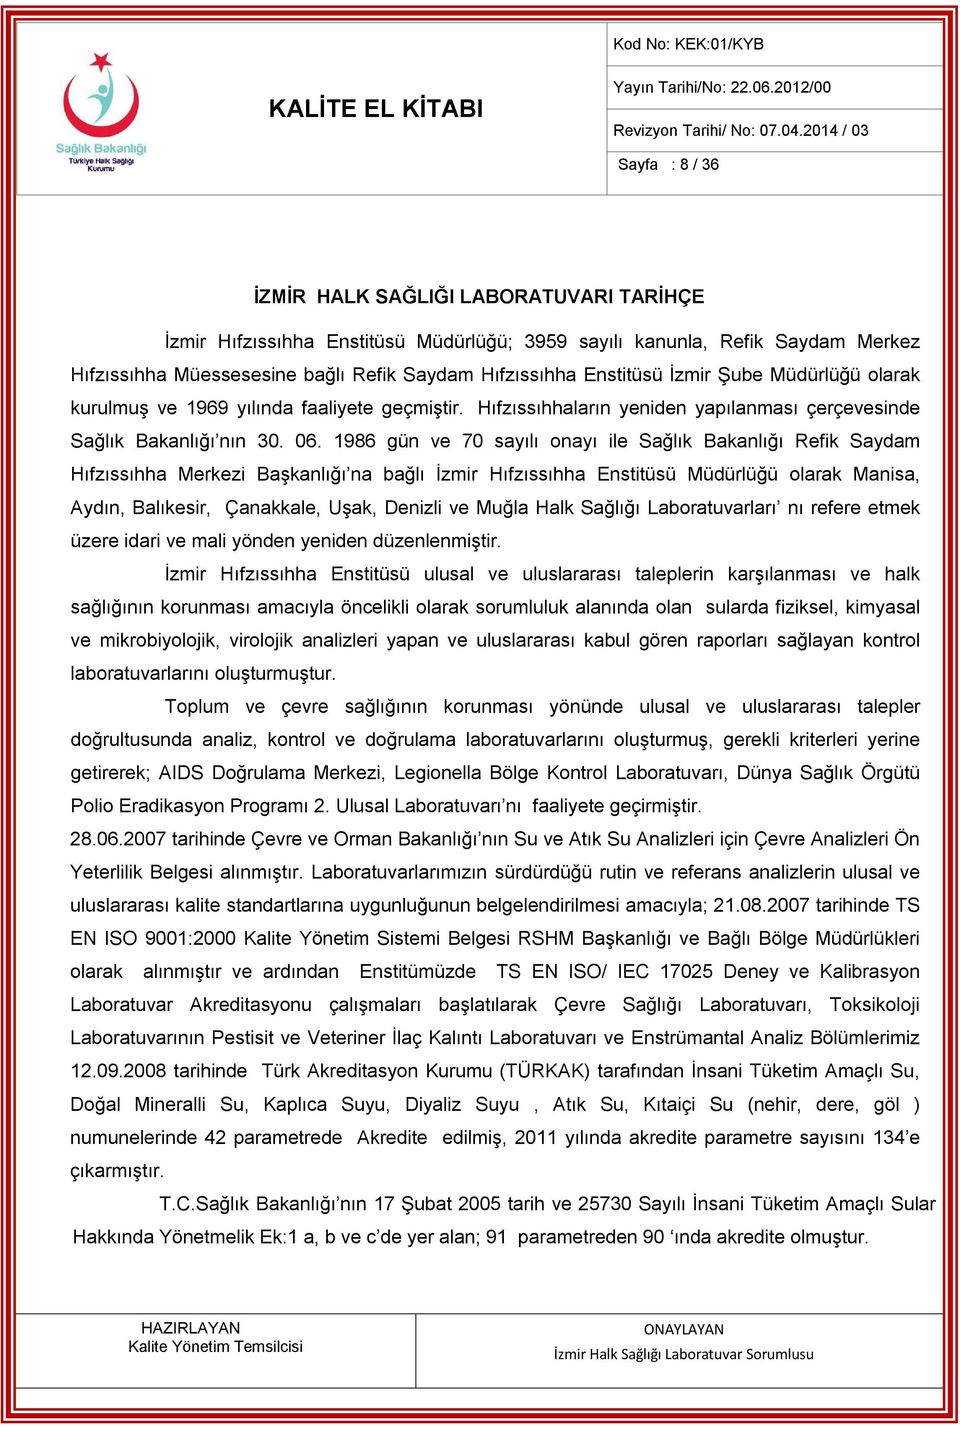 1986 gün ve 70 sayılı onayı ile Sağlık Bakanlığı Refik Saydam Hıfzıssıhha Merkezi Başkanlığı na bağlı İzmir Hıfzıssıhha Enstitüsü Müdürlüğü olarak Manisa, Aydın, Balıkesir, Çanakkale, Uşak, Denizli